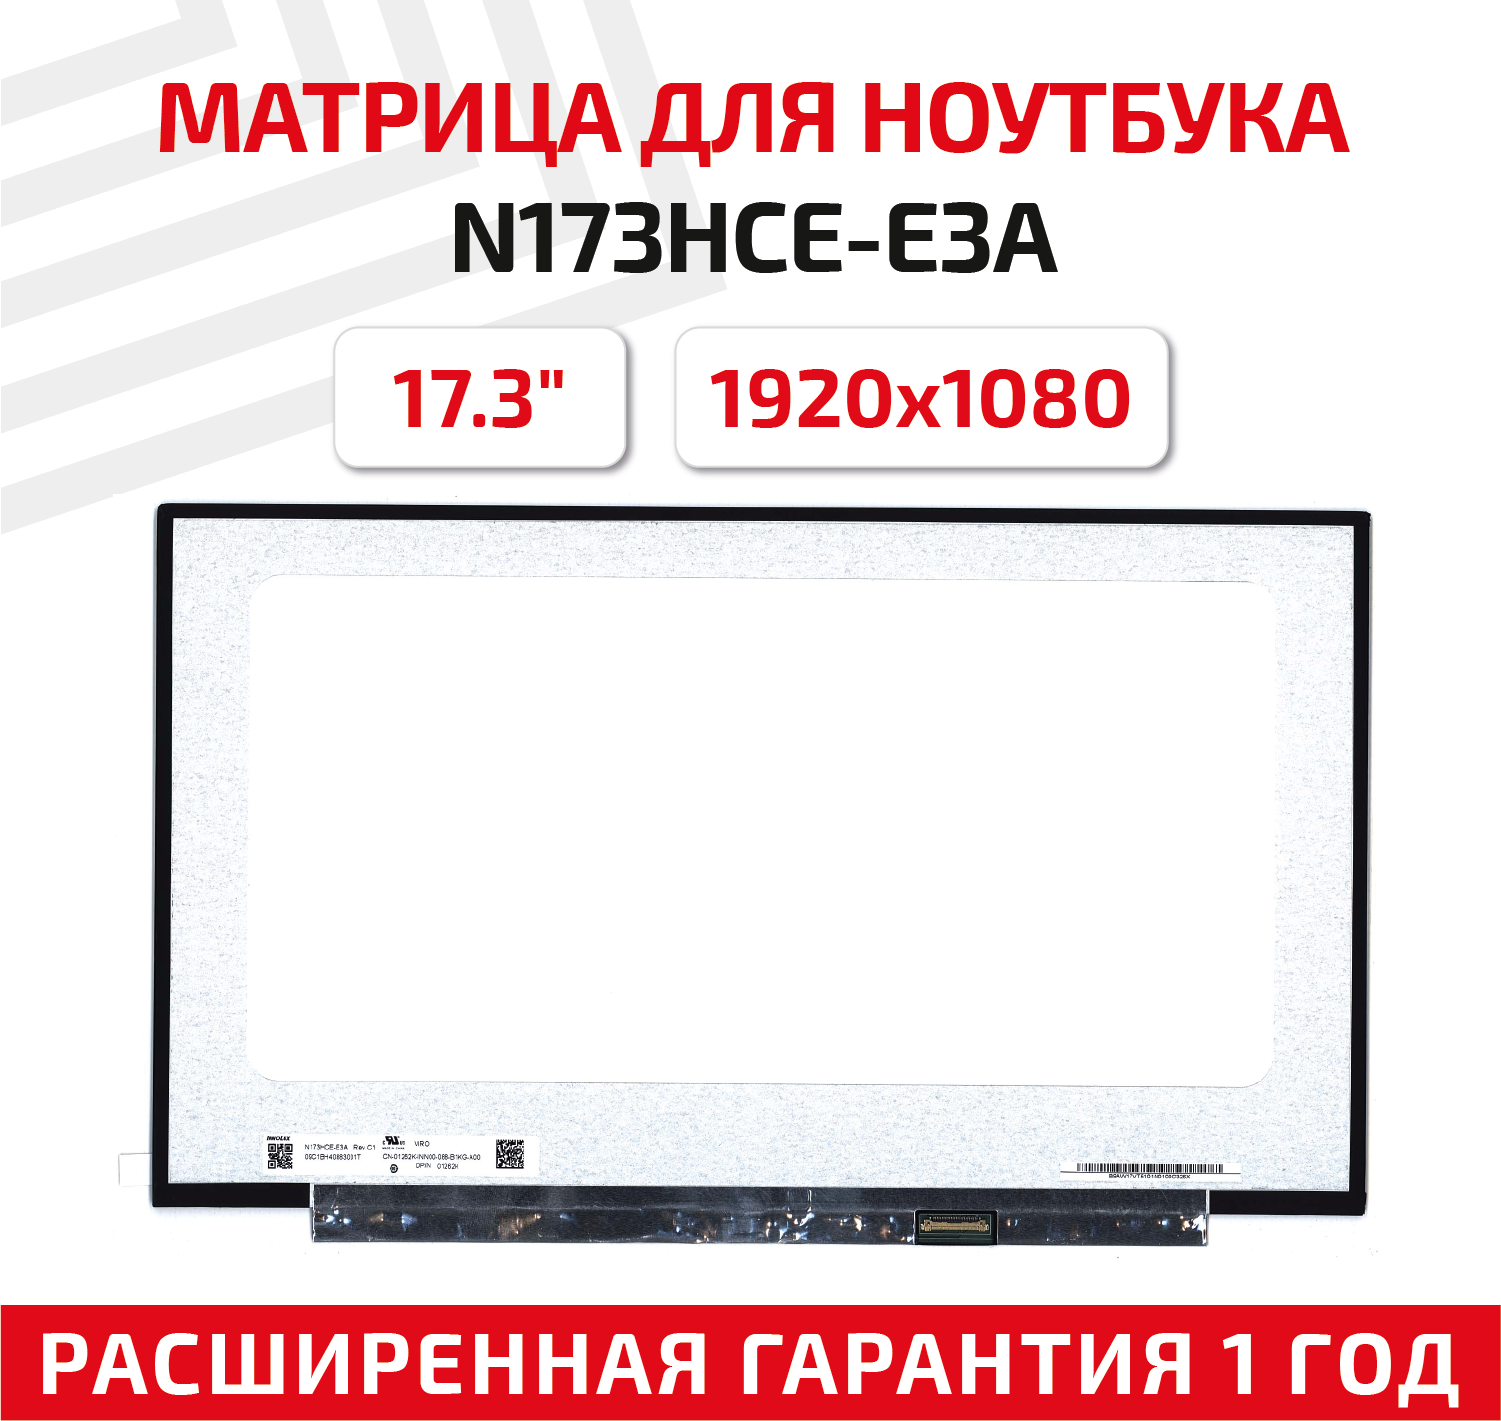 Матрица (экран) для ноутбука N173HCE-E3A, 17.3", 1920x1080, Slim (тонкая), 30-pin, светодиодная (LED), матовая